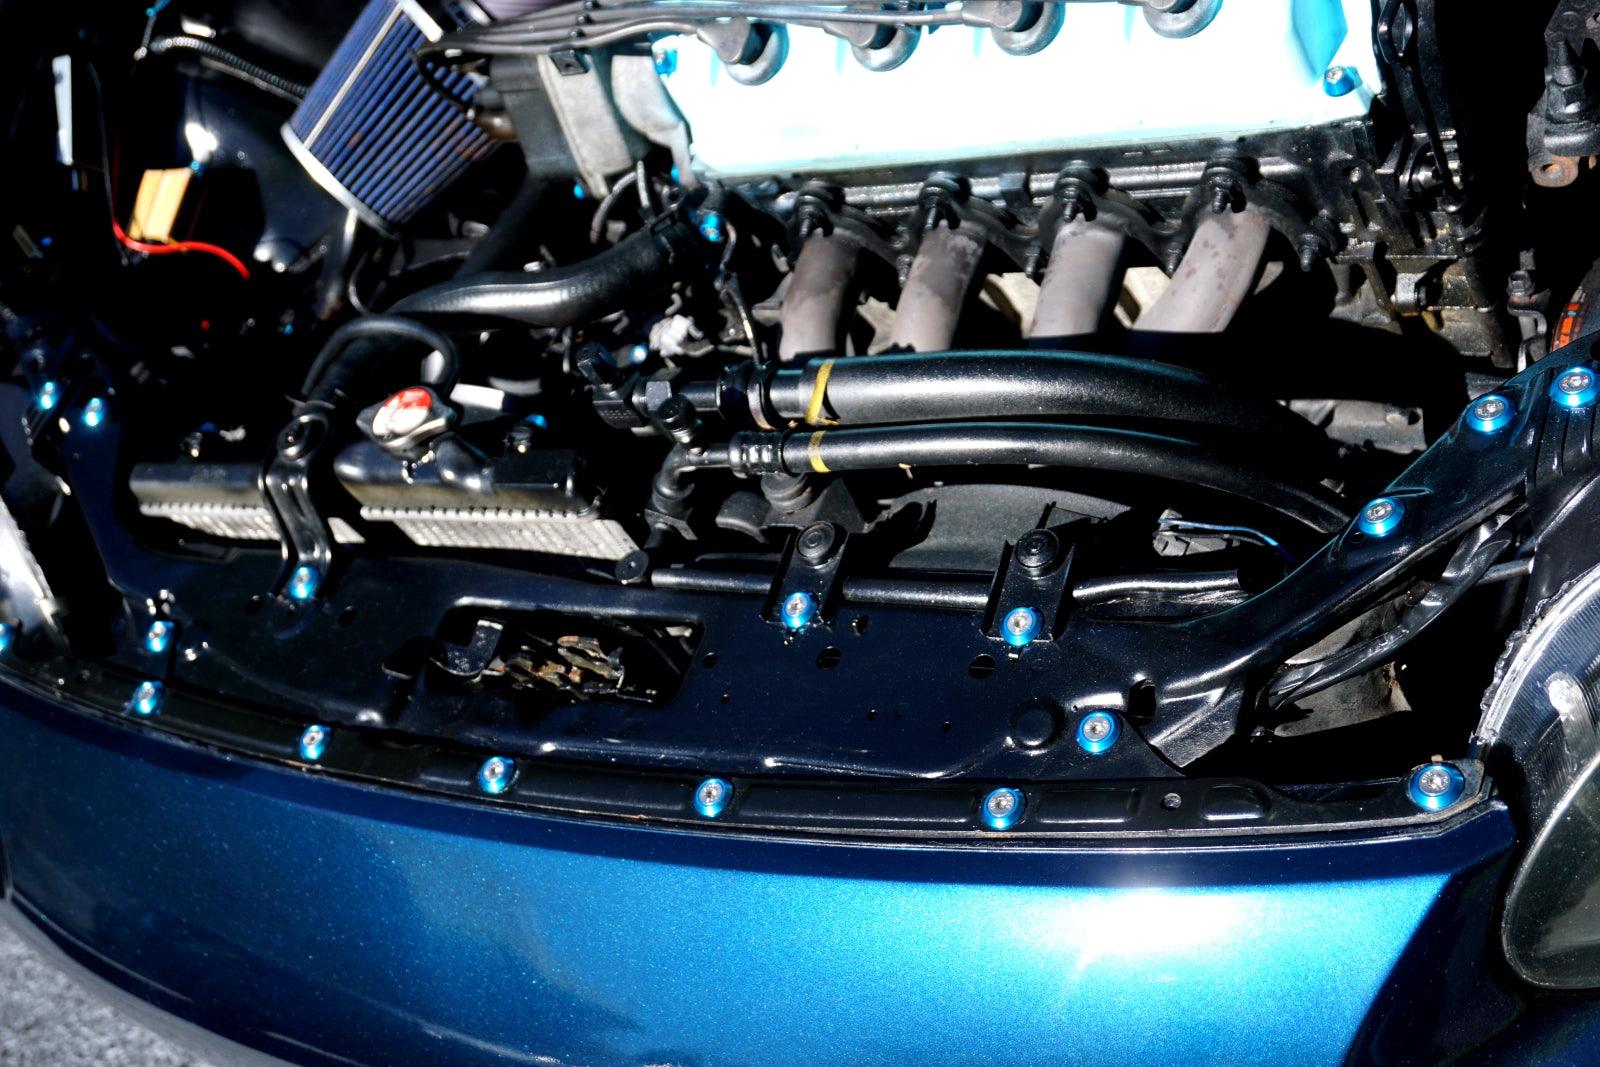 ZSPEC Dress Up Bolts® Fastener Kit for '97-99 Honda Civic/Del Sol 1.6L D-Series Stainless Steel & Billet Aluminum Dress Up Bolts Fasteners Washers Red Blue Purple Gold Burned Black Performance Engine Bay Upgrade JDM